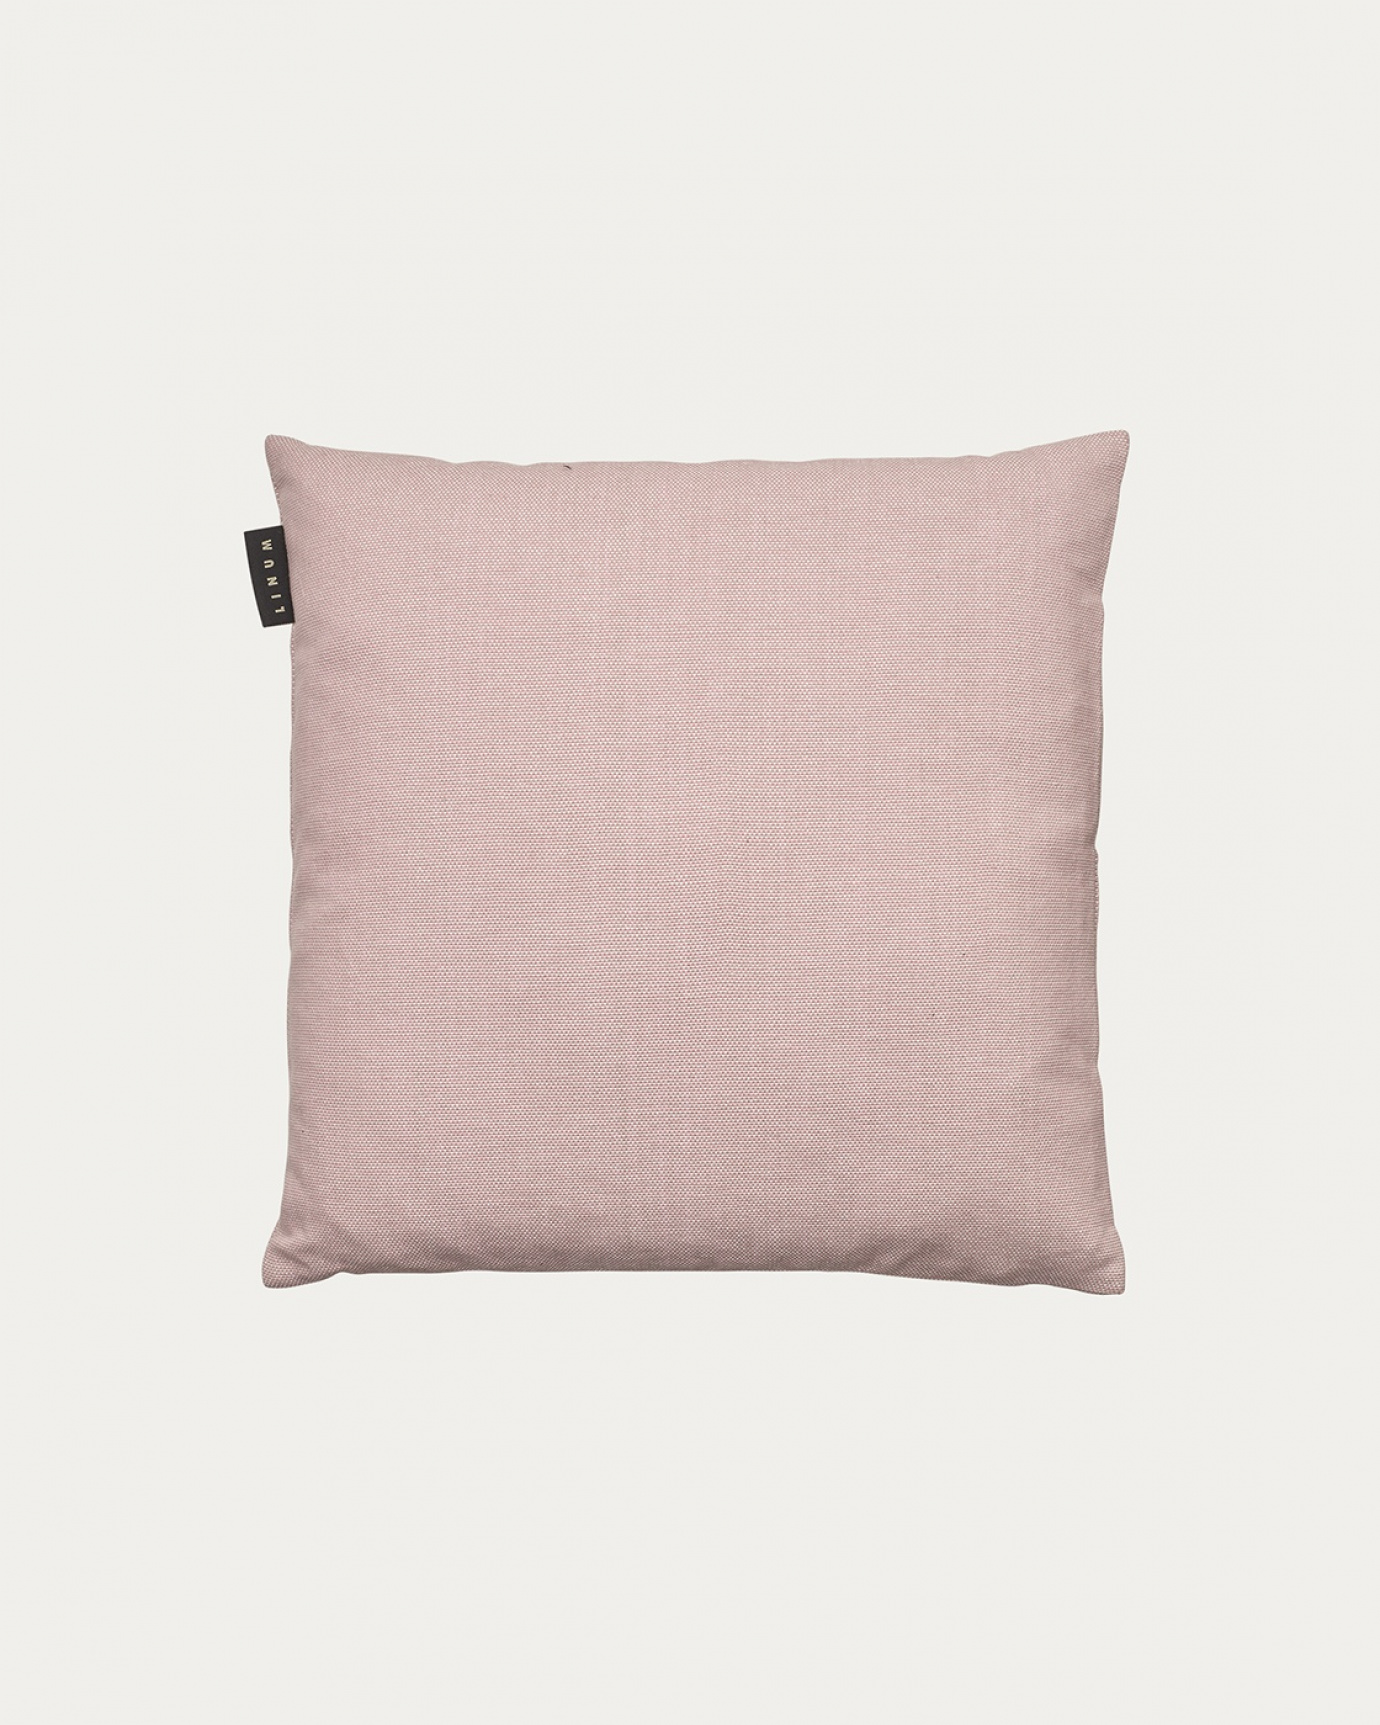 Produktbild dammig rosa PEPPER kuddfodral av mjuk bomull från LINUM DESIGN. Lätt att tvätta och hållbar genom generationer. Storlek 40x40 cm.